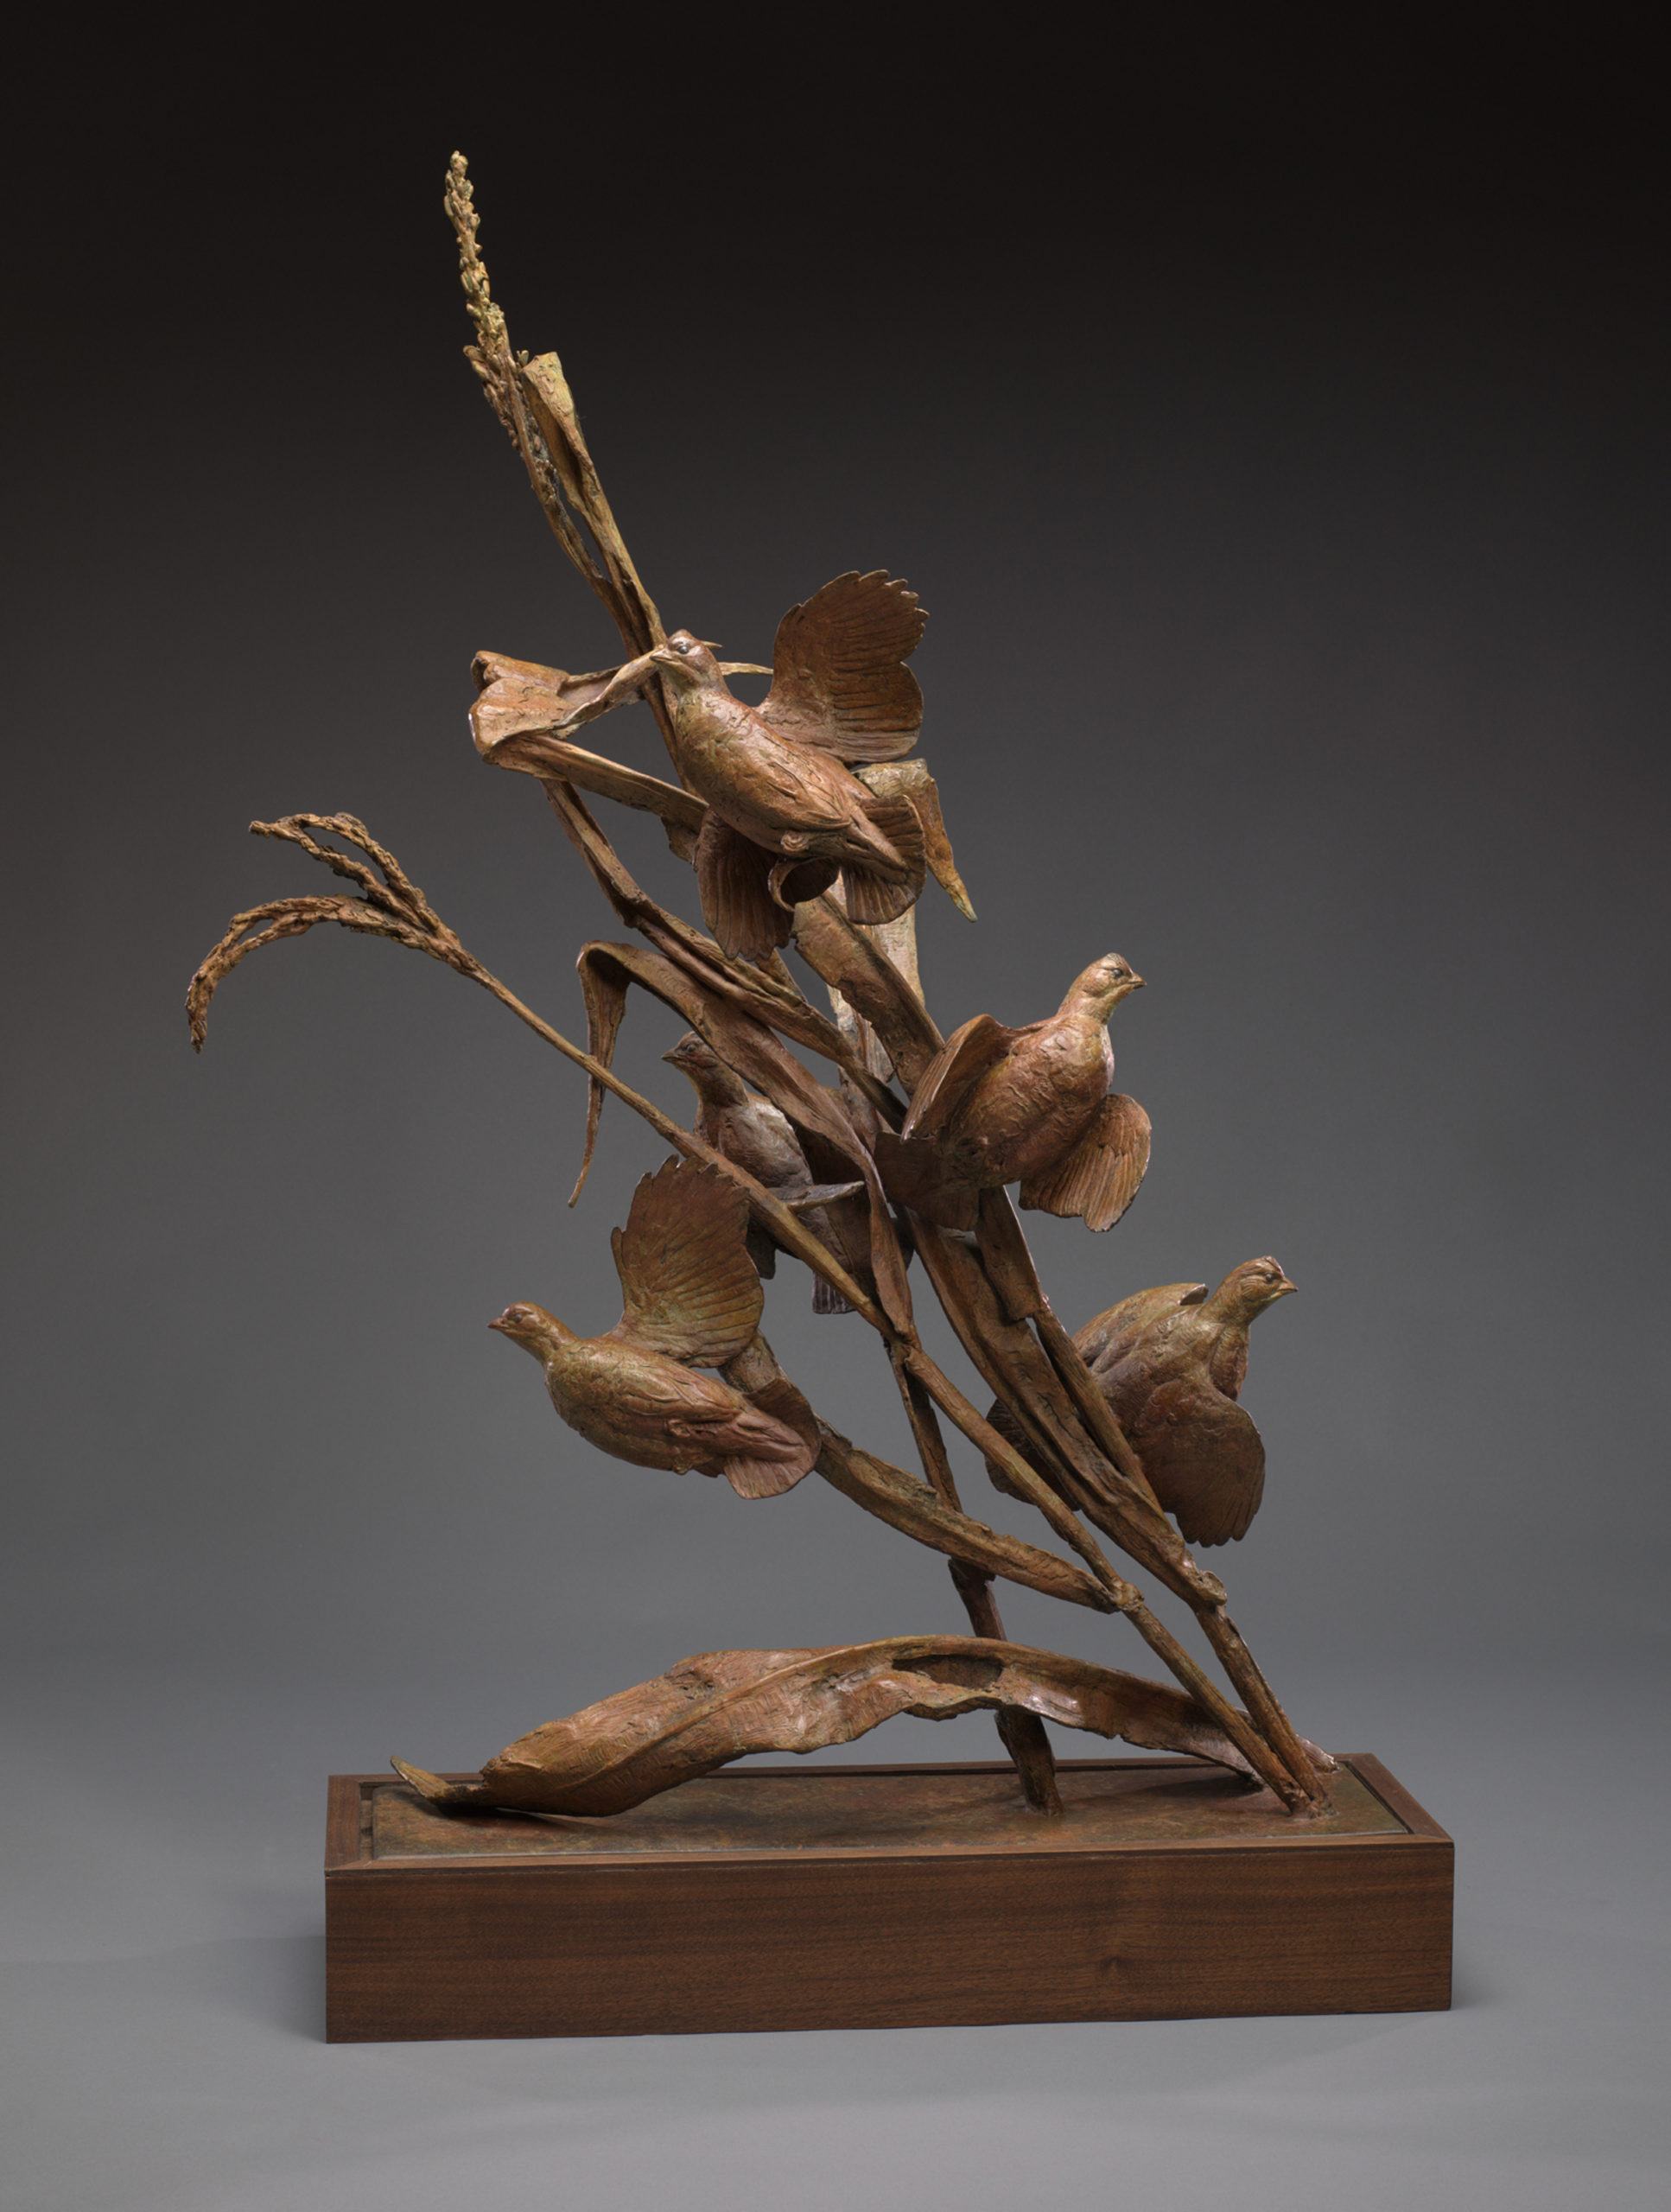 Walter Matia - Noon Quail, bronze, 41 x 25 x 8.5